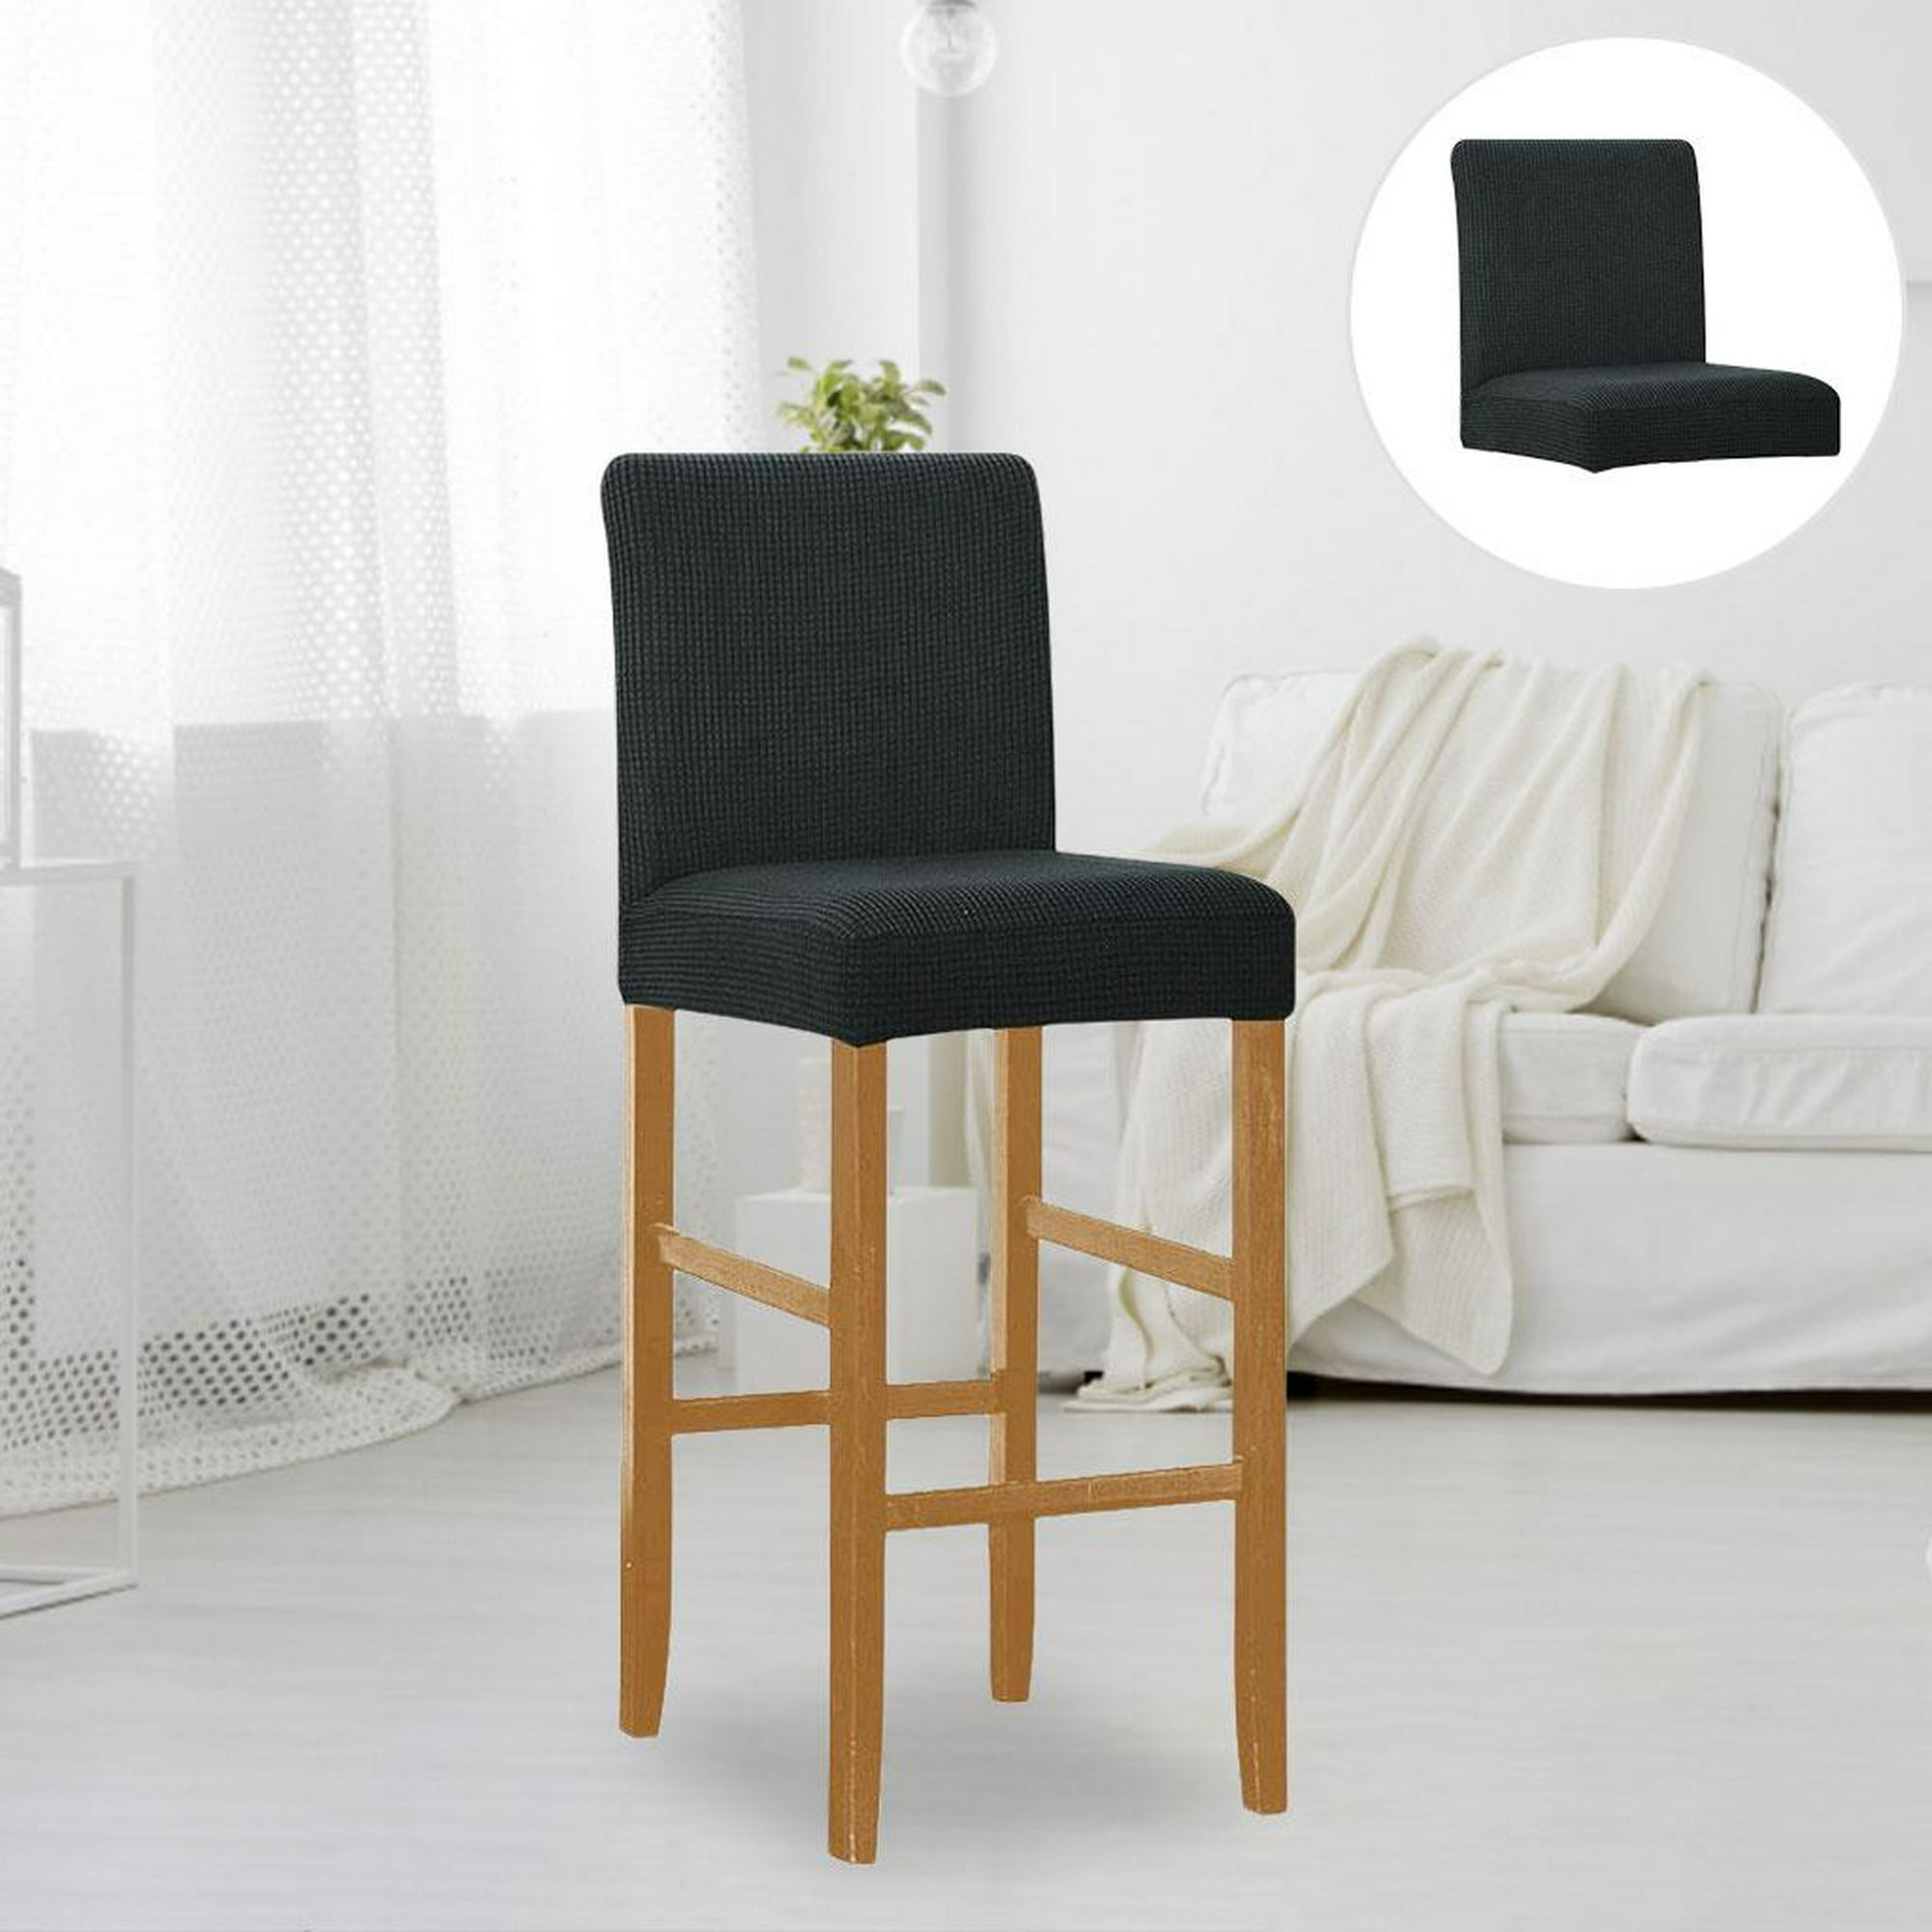  Funda de silla impresa de moda para comedor Hotel a prueba de  polvo Fundas elásticas para sillas Protector de muebles extraíble : Hogar y  Cocina